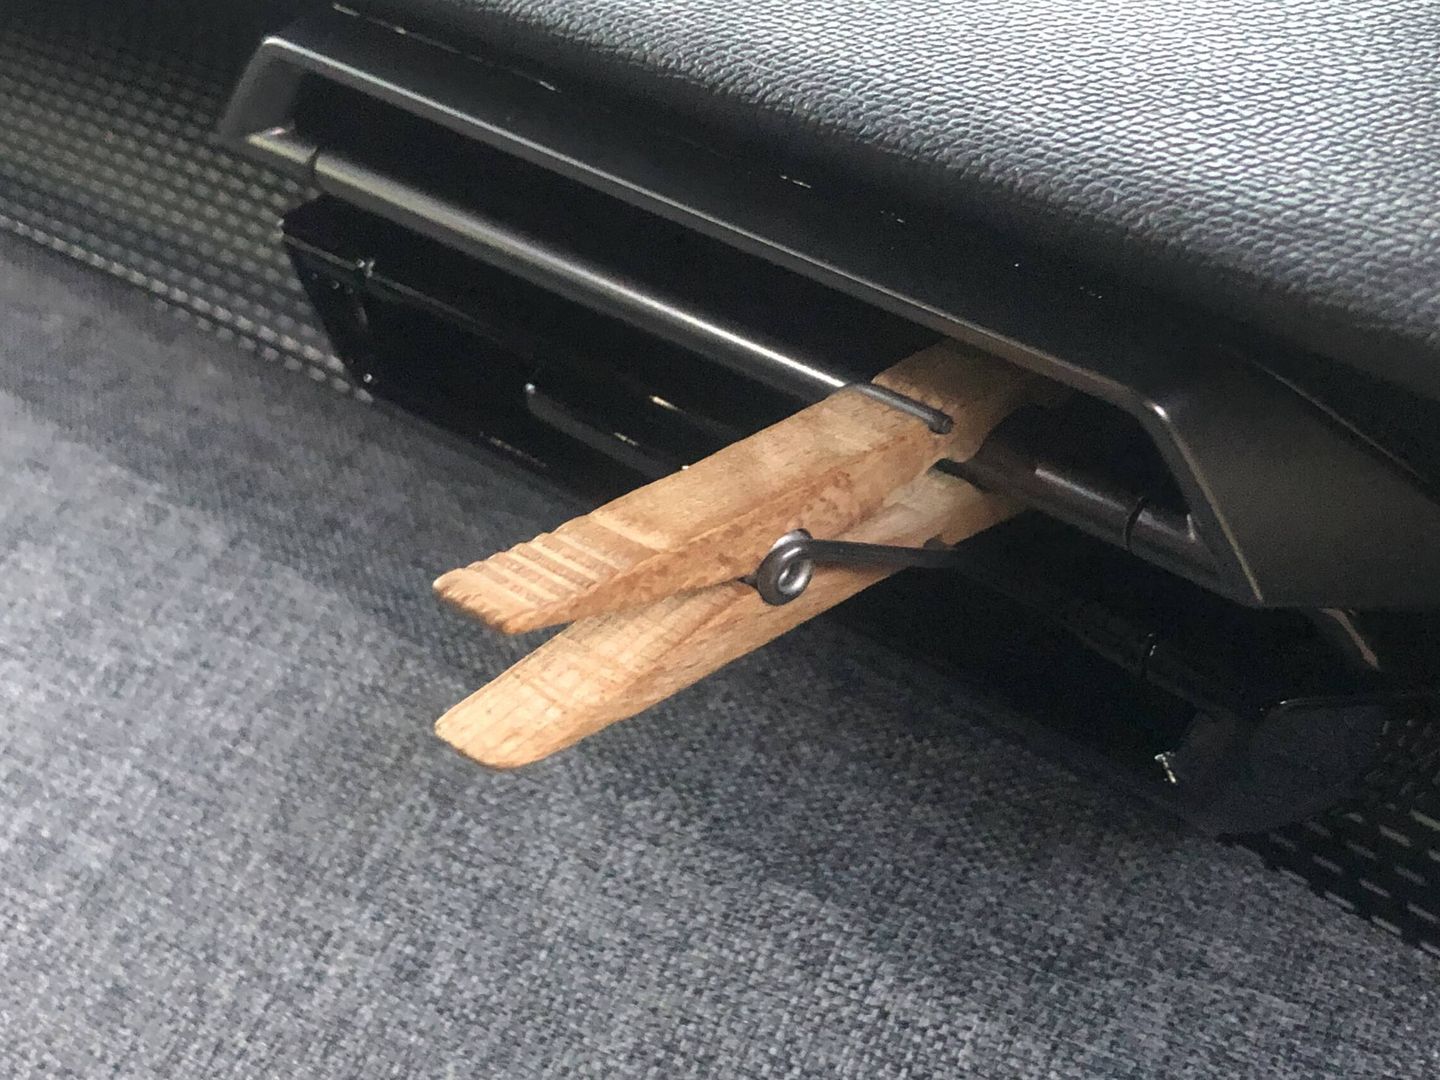 Una pinza de madera impregnada en un líquido de buen olor nos ambientará el coche.